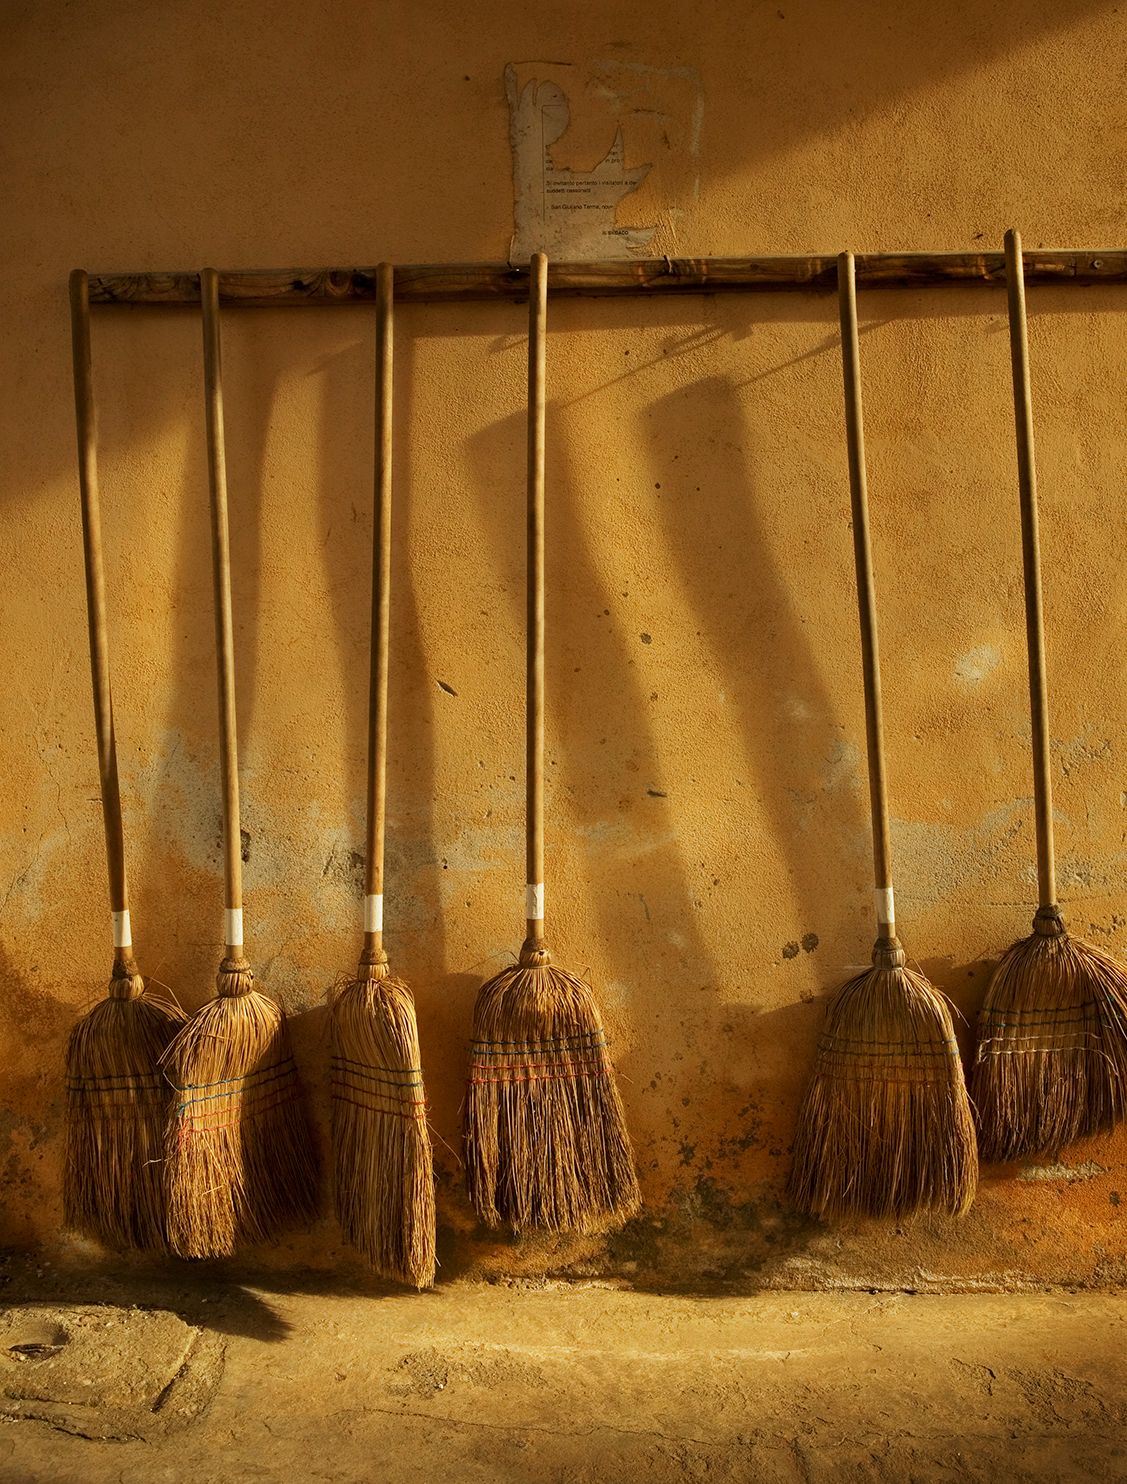 Asciano Brooms, Tuscany, Italy 